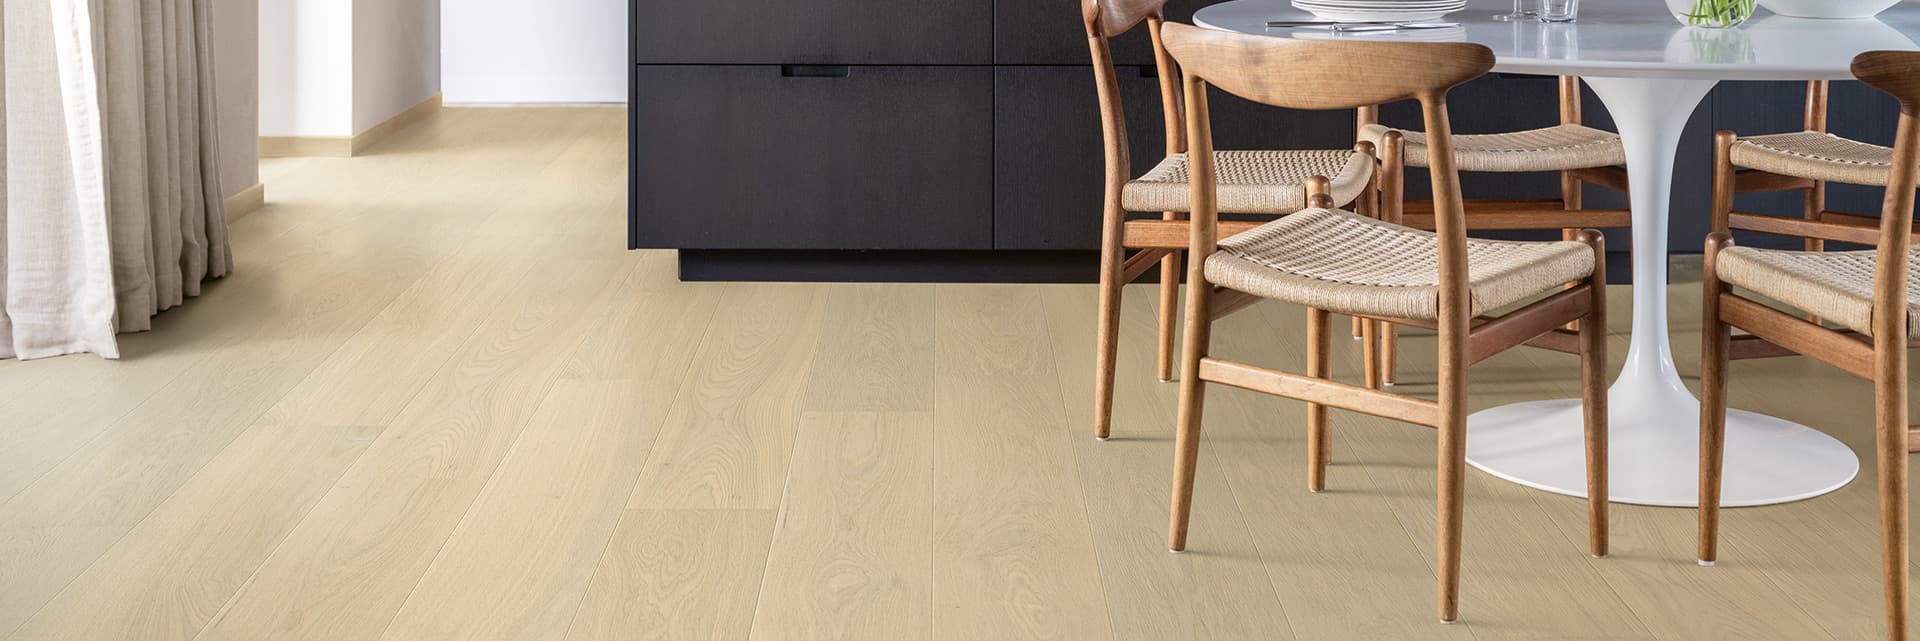 Beige wood flooring in the kitchen